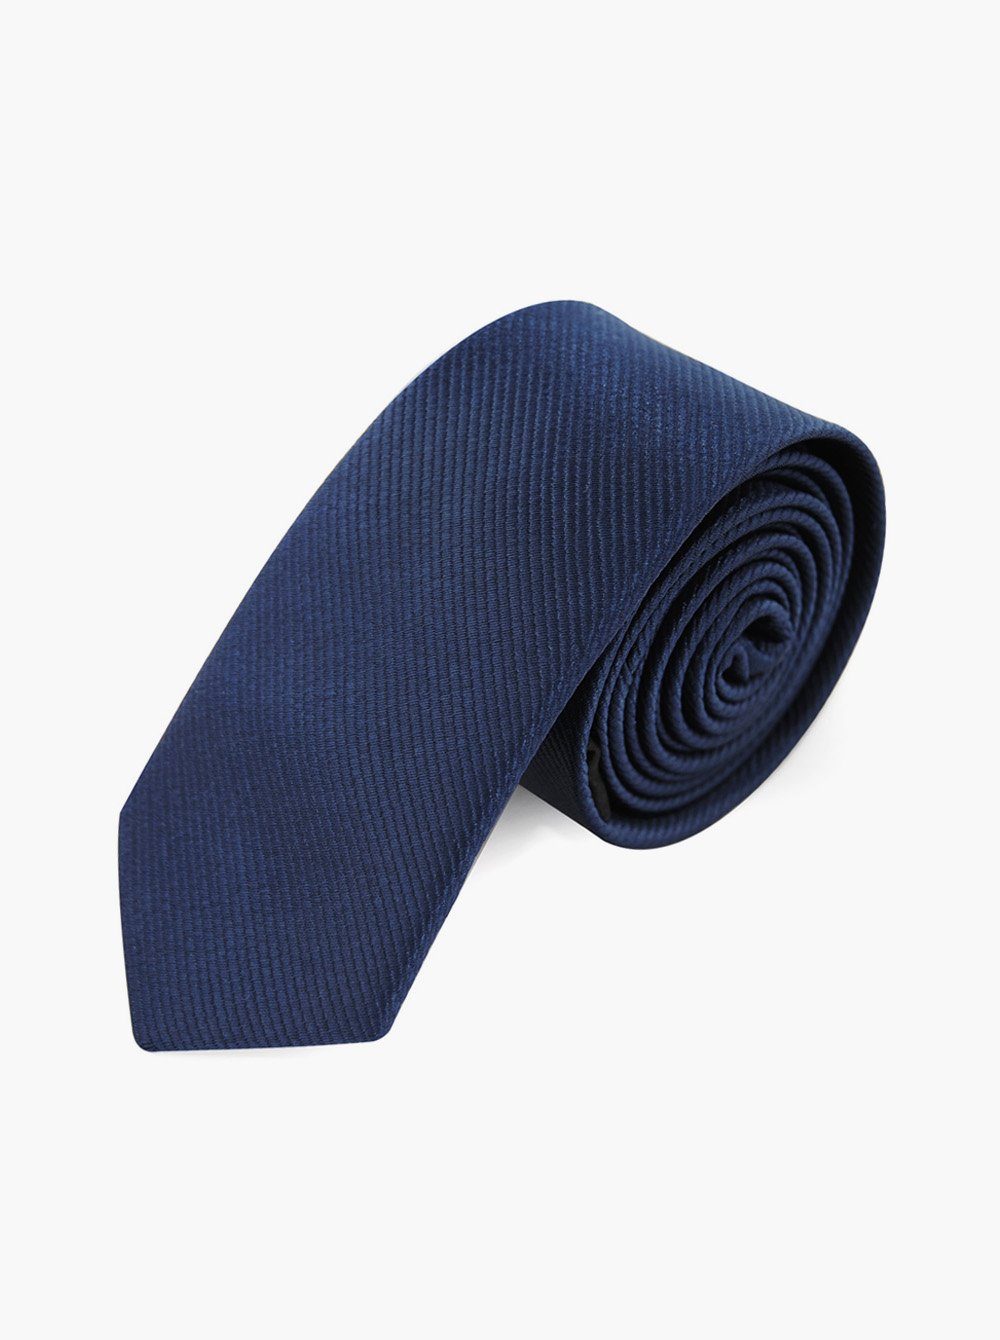 axy Krawatte Herren Krawatte 5.0 cm breit einfarbig perfektes Geschenk Seidenkrawatte, mit Geschenkbox Navyblau